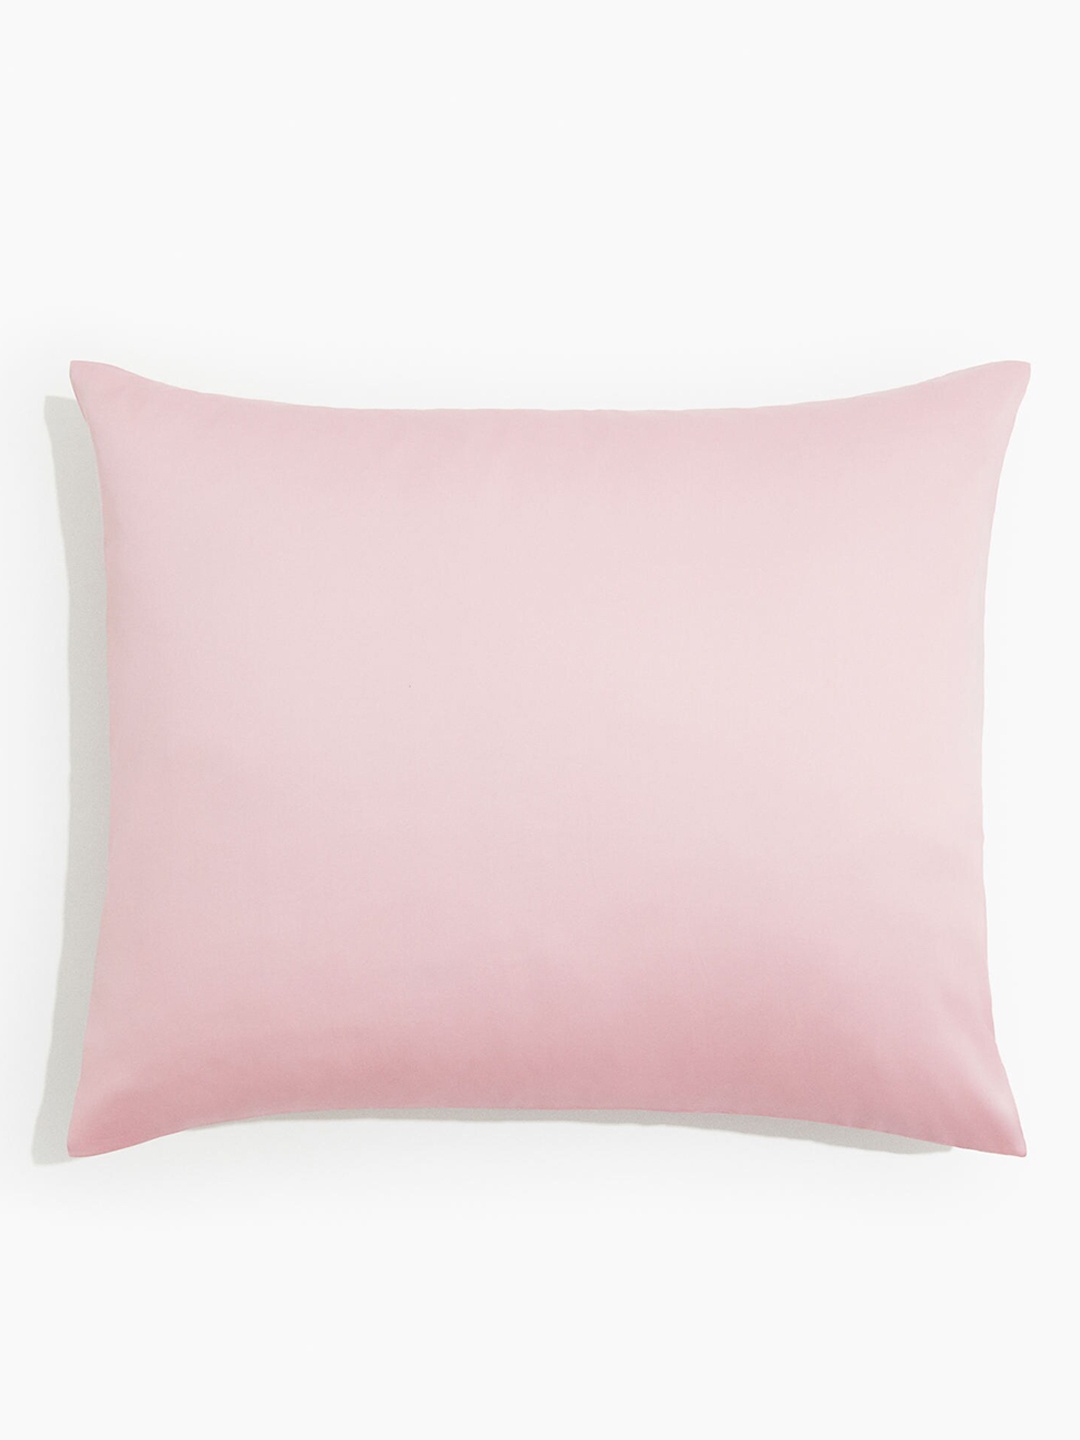 

H&M Pink Satin Pillowcase